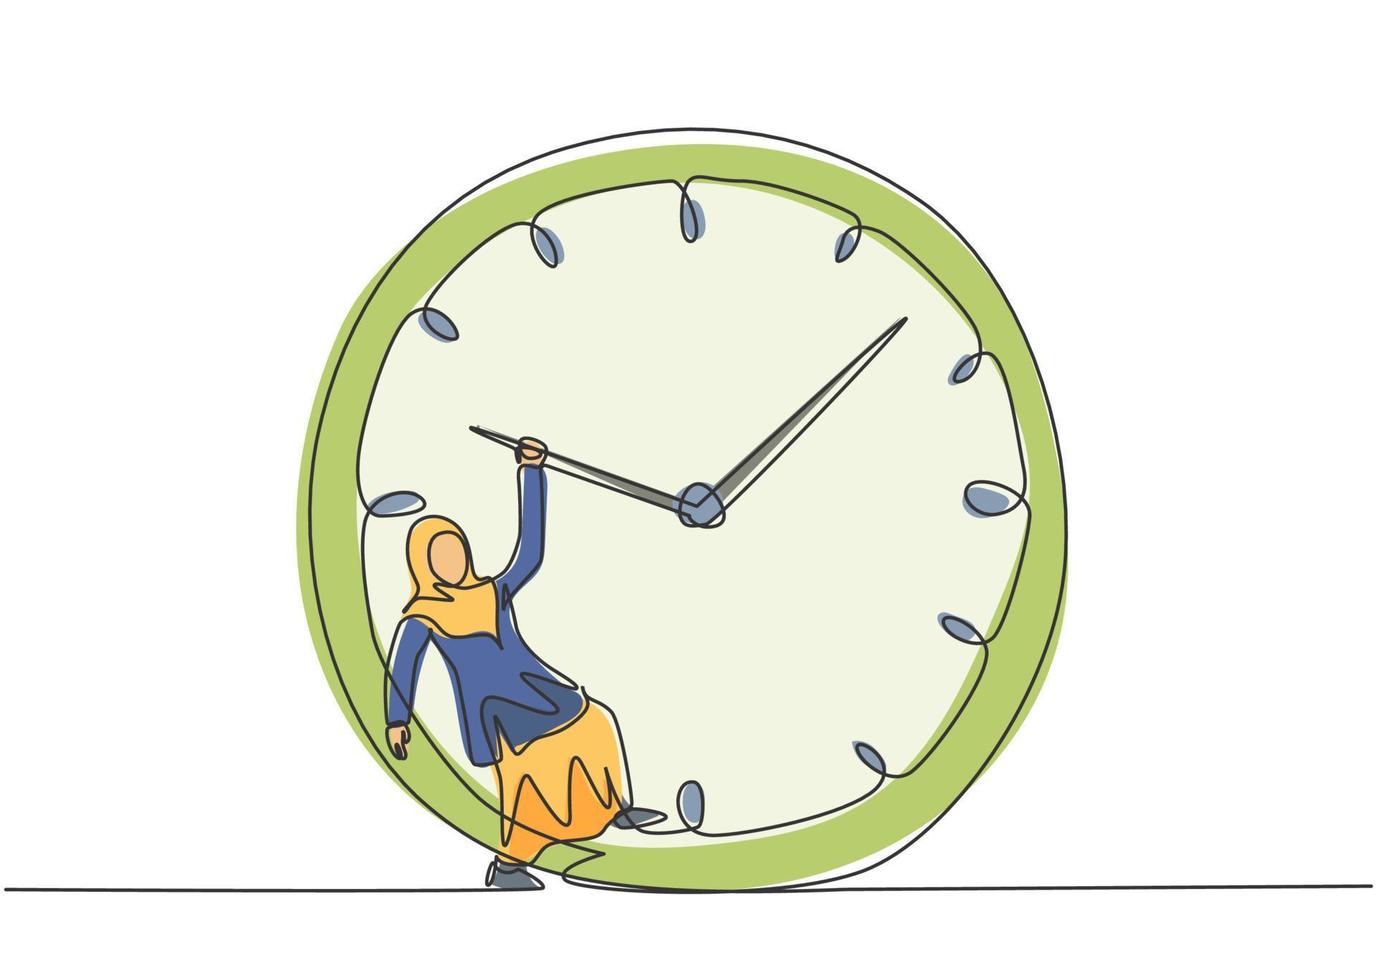 einzelne durchgehende Linie, die junge arabische Geschäftsfrau zeichnet, die an der riesigen analogen Uhr im Uhrzeigersinn hängt. Business Time Disziplin Metapher Konzept. dynamische eine linie zeichnen grafikdesign vektorillustration vektor